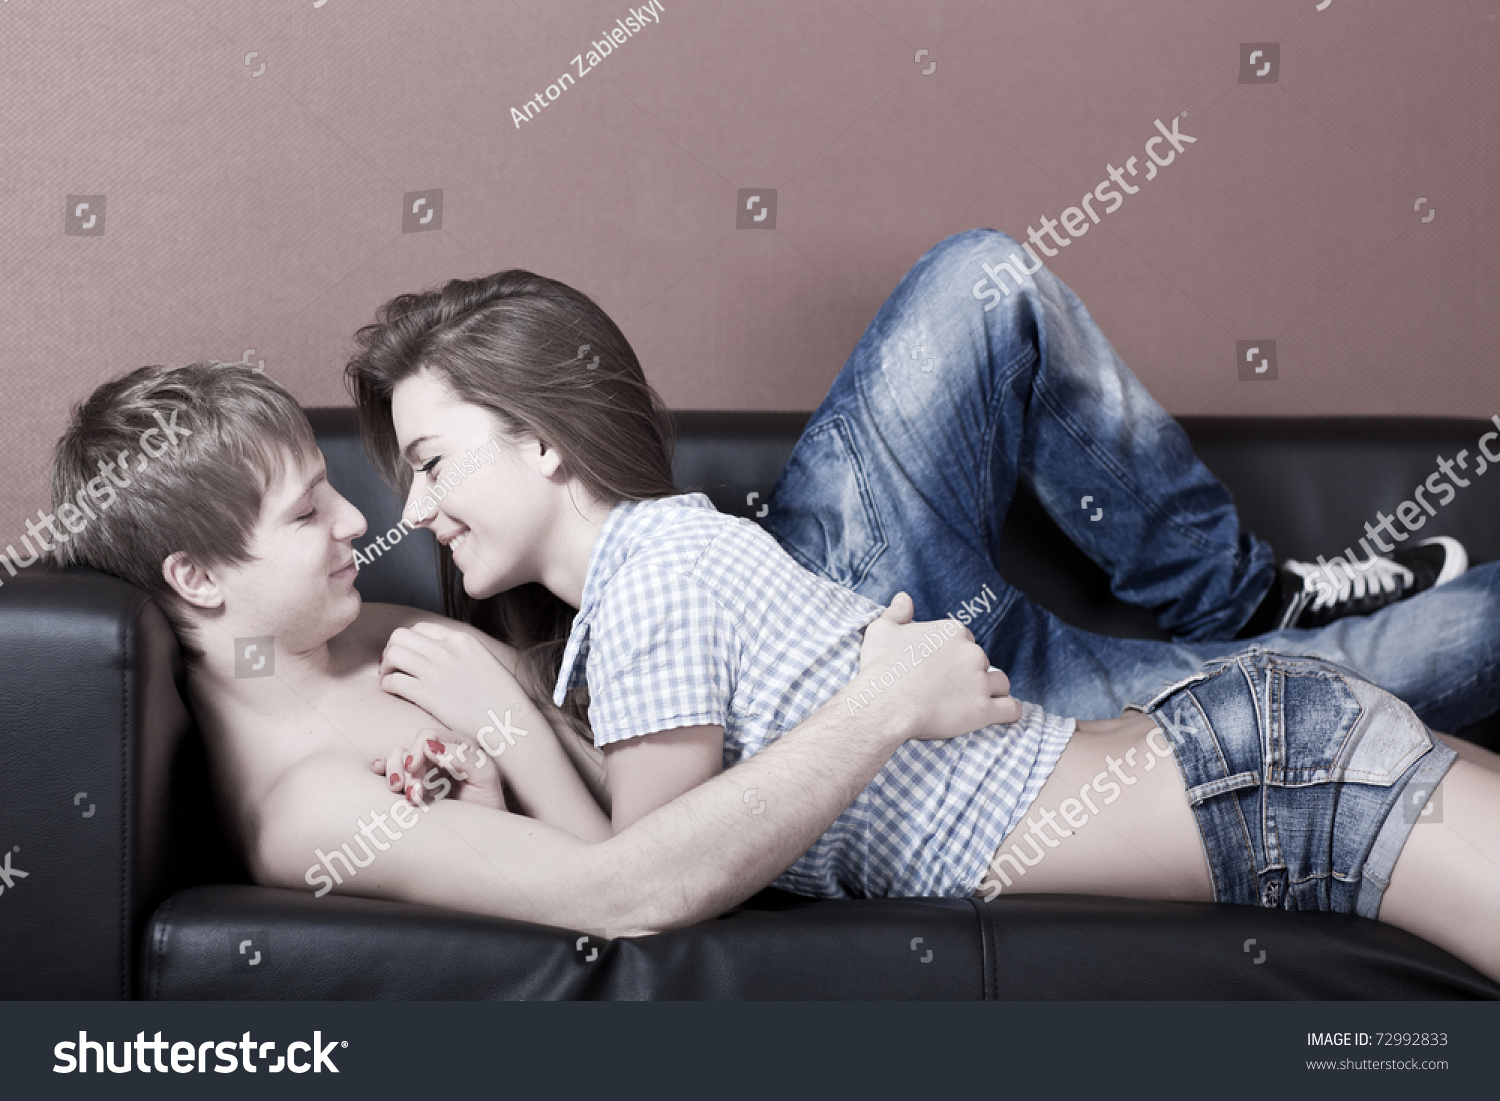 Две молодые пары показывают друг другу как ебутся и залезают в одну кровать